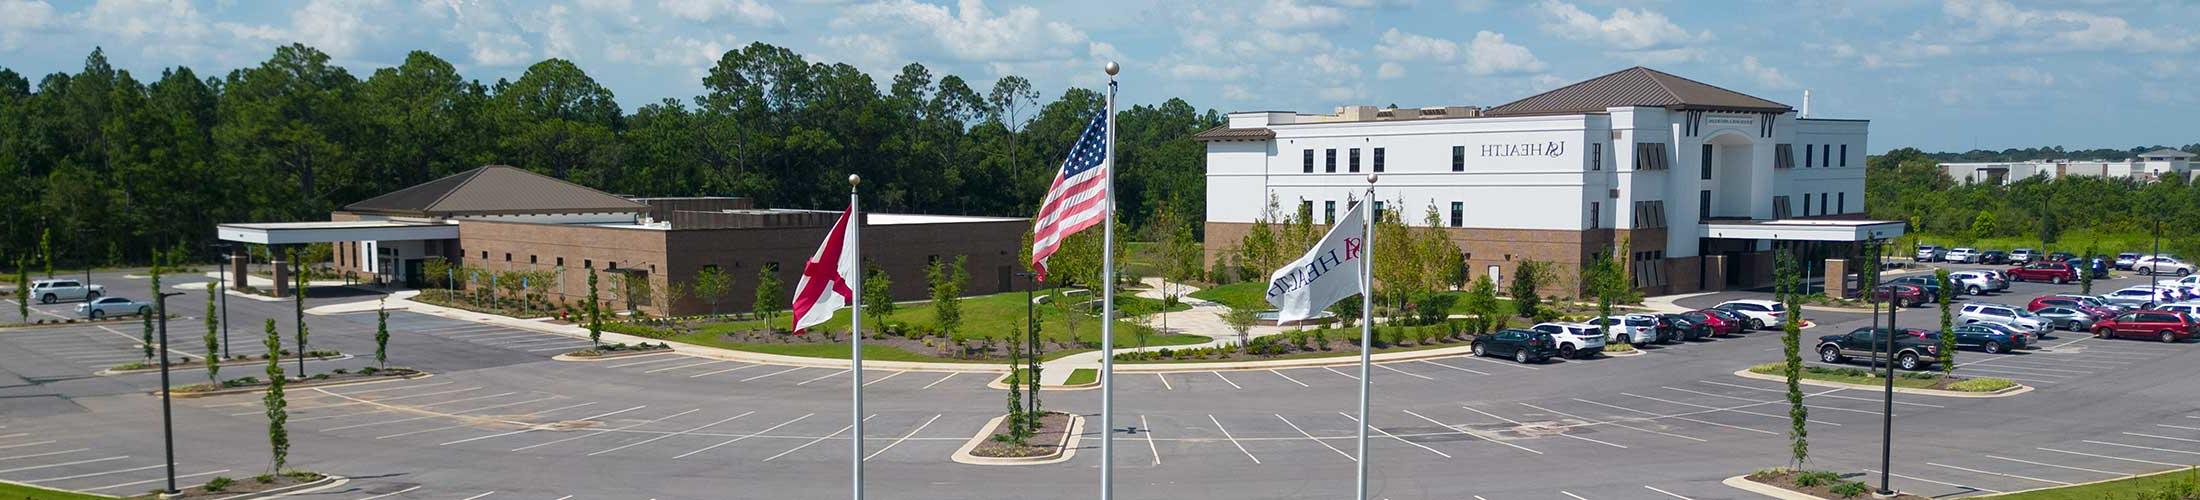 美国健康 facility with flags in front.